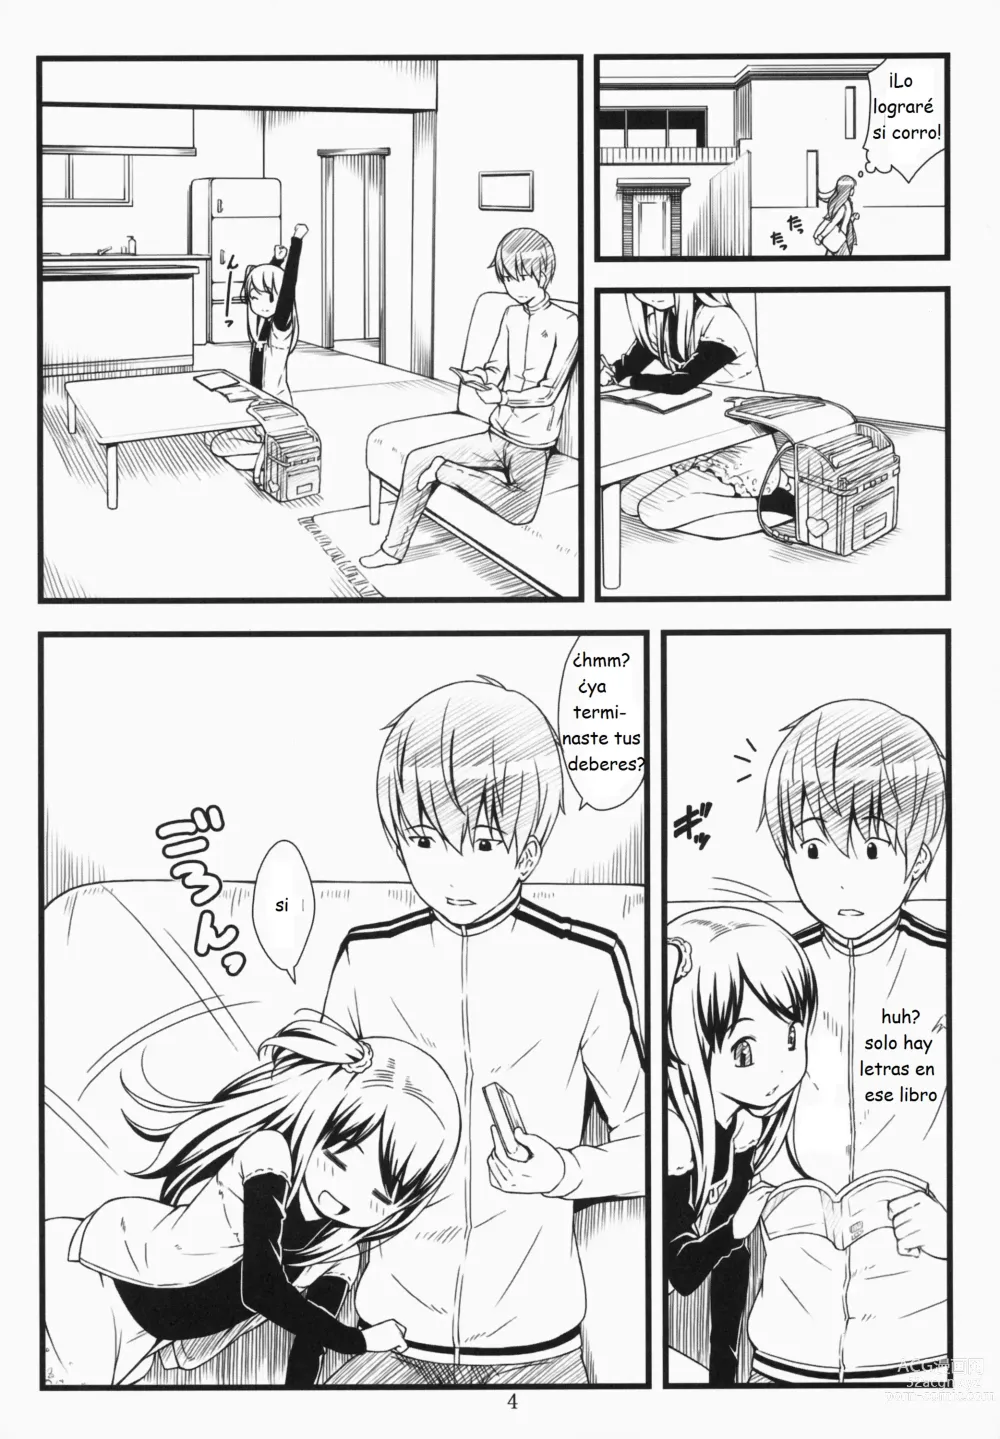 Page 3 of doujinshi Hotai!